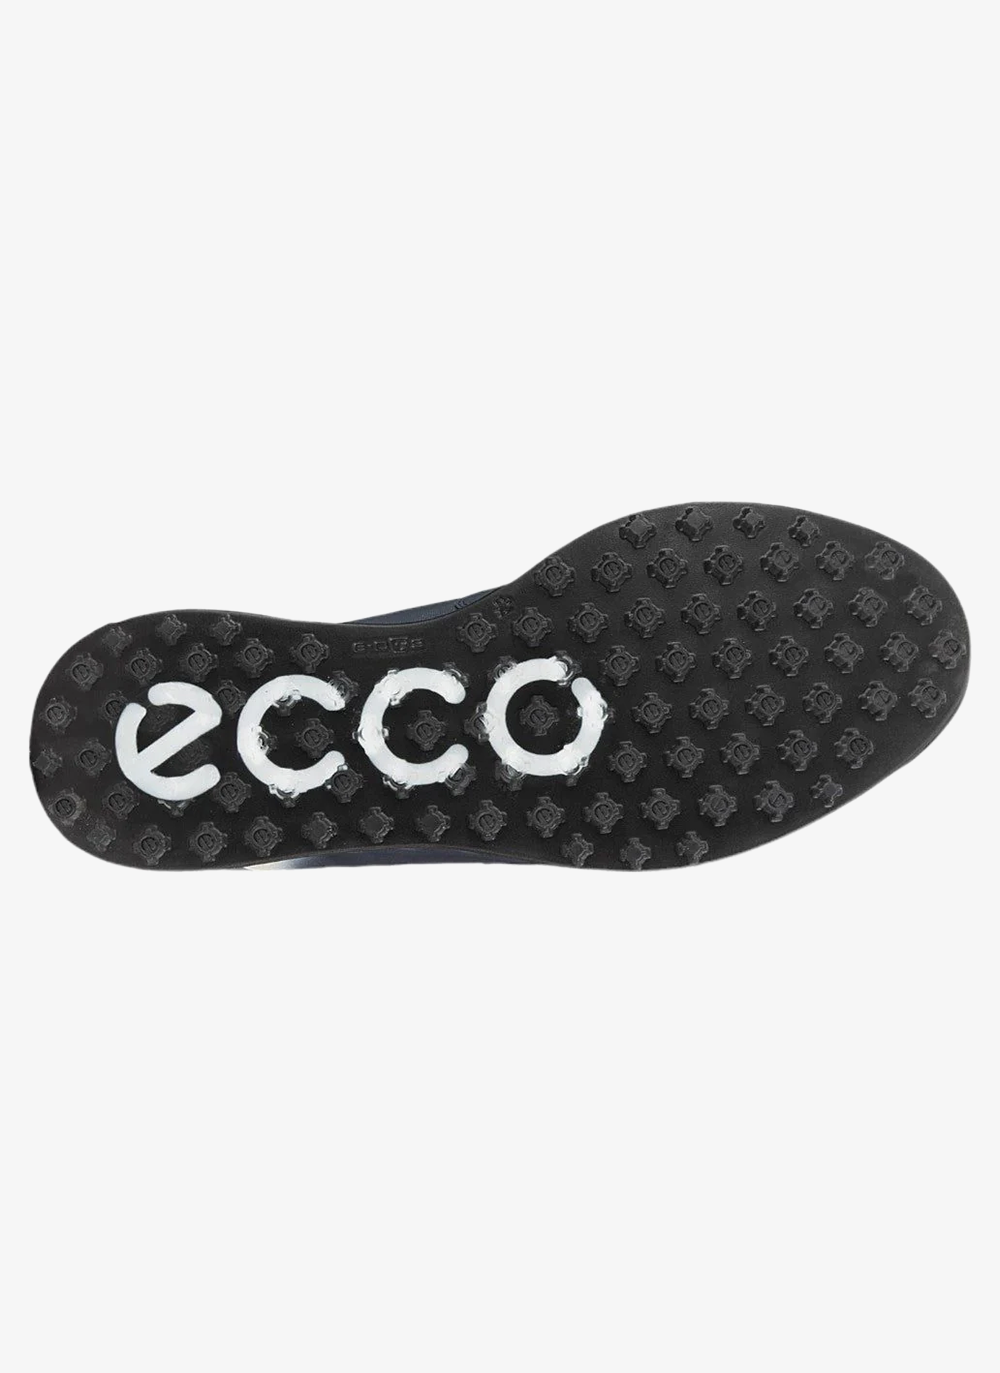 Ecco S-Three BOA Golf Shoes 102954